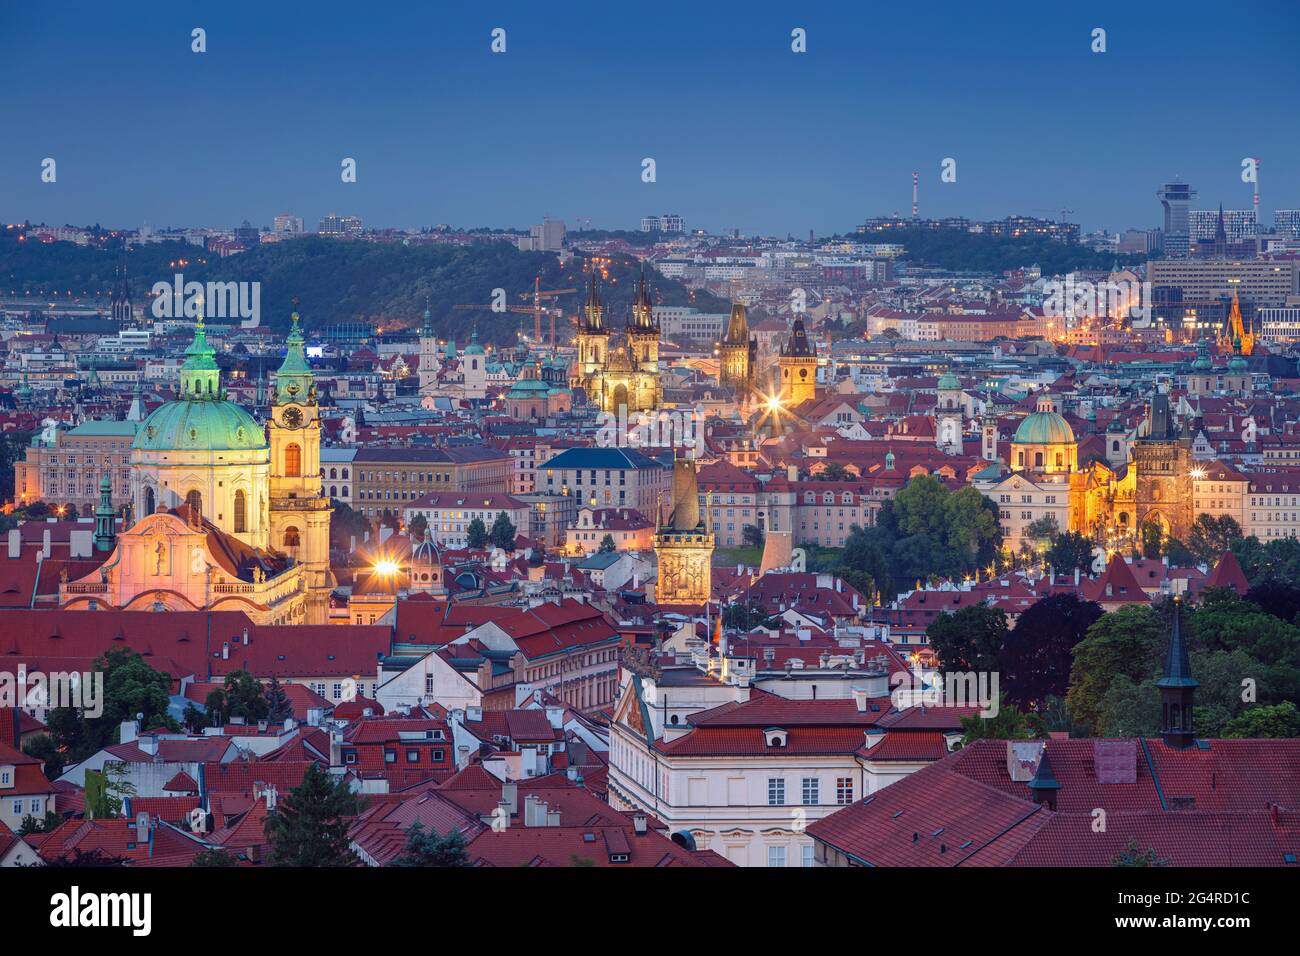 Città vecchia di Praga. Immagine aerea del paesaggio urbano di Praga, capitale della Repubblica Ceca con la Chiesa di nostra Signora prima del Tyn, la Torre del Ponte della Città Vecchia e P. Foto Stock